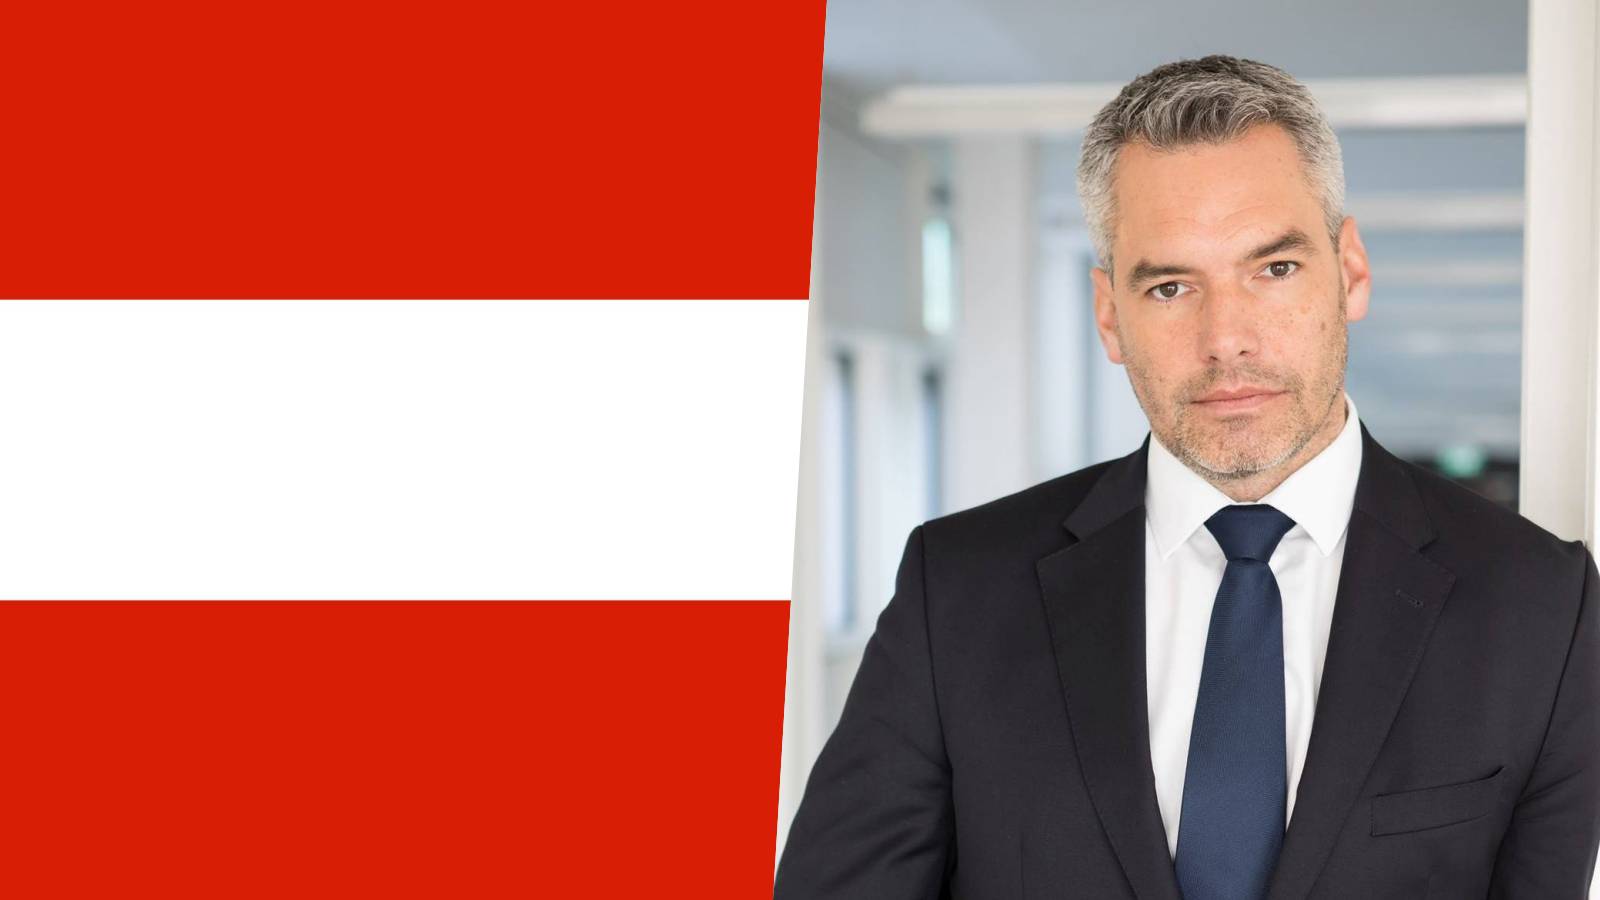 Österreich bereitete Karl Nehammer WICHTIGE Maßnahmen Schengen Rumänien vor